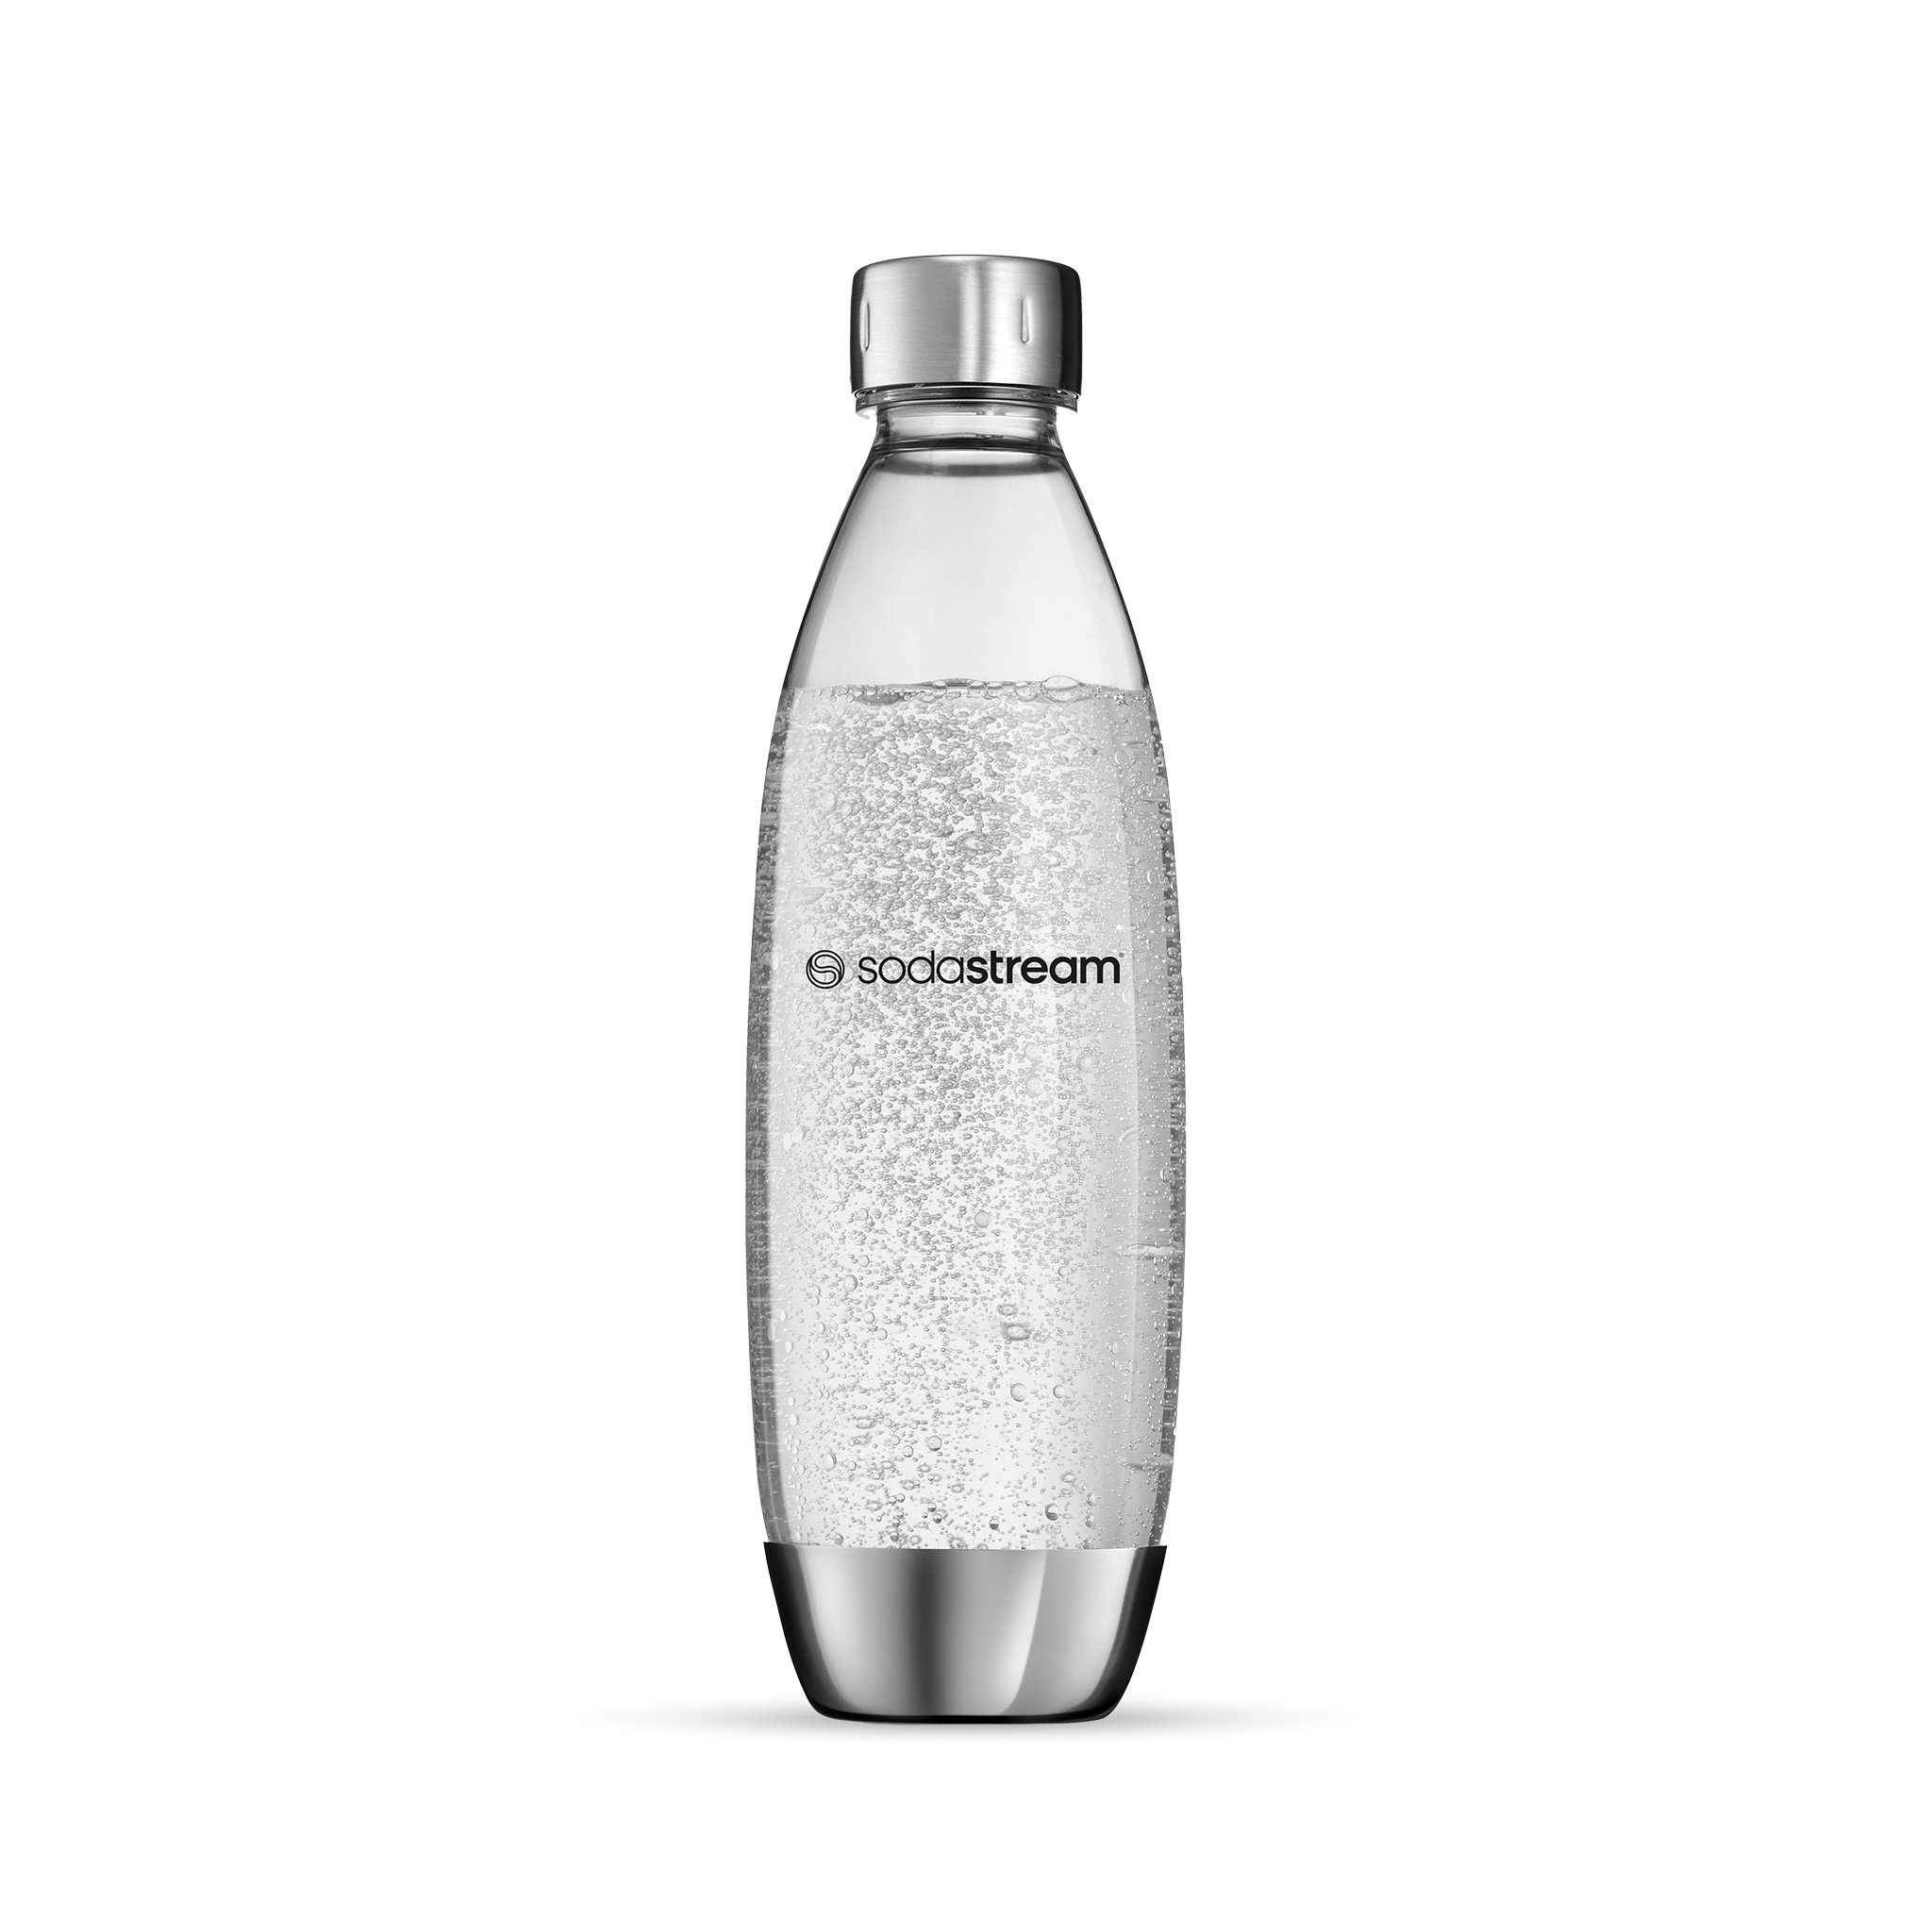 בקבוק פלסטיק בגימור מטאלי בנפח 1 ליטר* - מתאים לשימוש במדיח